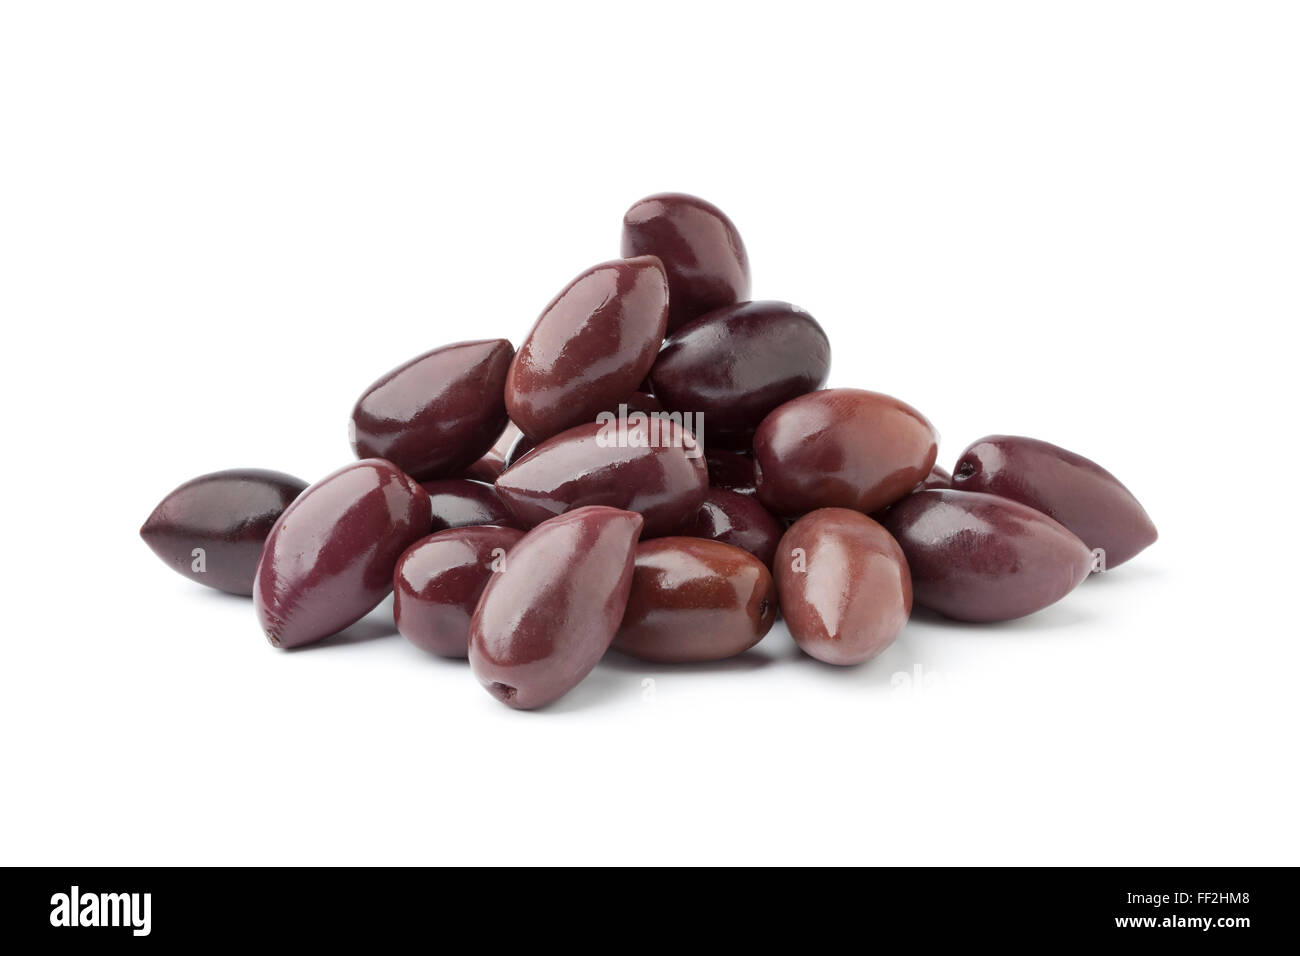 Heap of black Calamata olives on white background Stock Photo